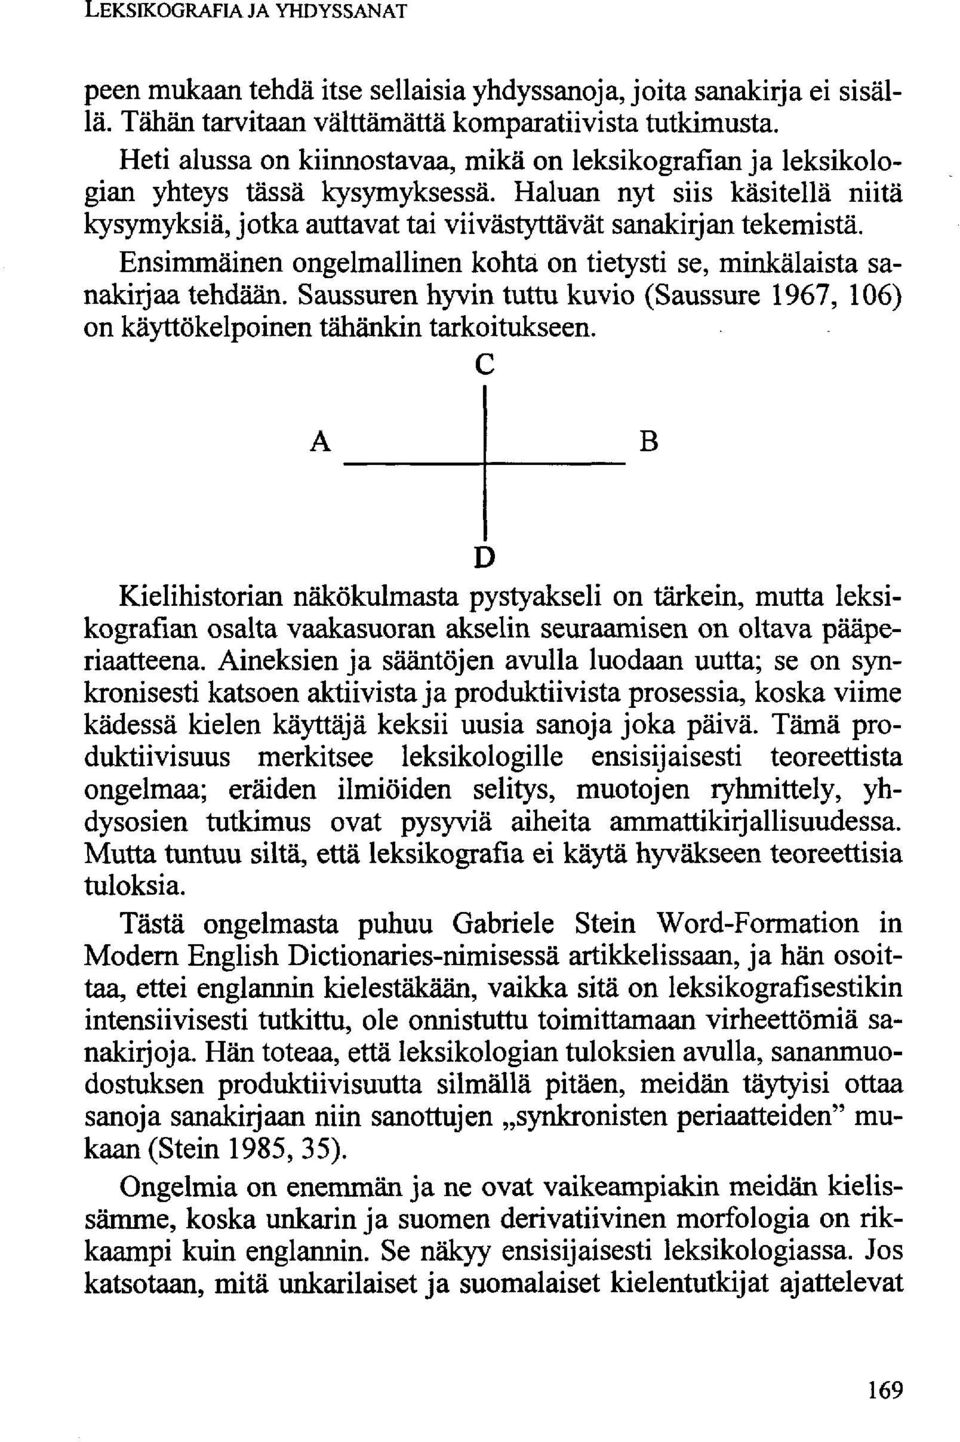 Ensimmäinen ongelmallinen kohta on tietysti se, minkälaista sanakirjaa tehdään. Saussuren hyvin tuttu kuvio (Saussure 1967, 106) on käyttökelpoinen tähänkin tarkoitukseen.